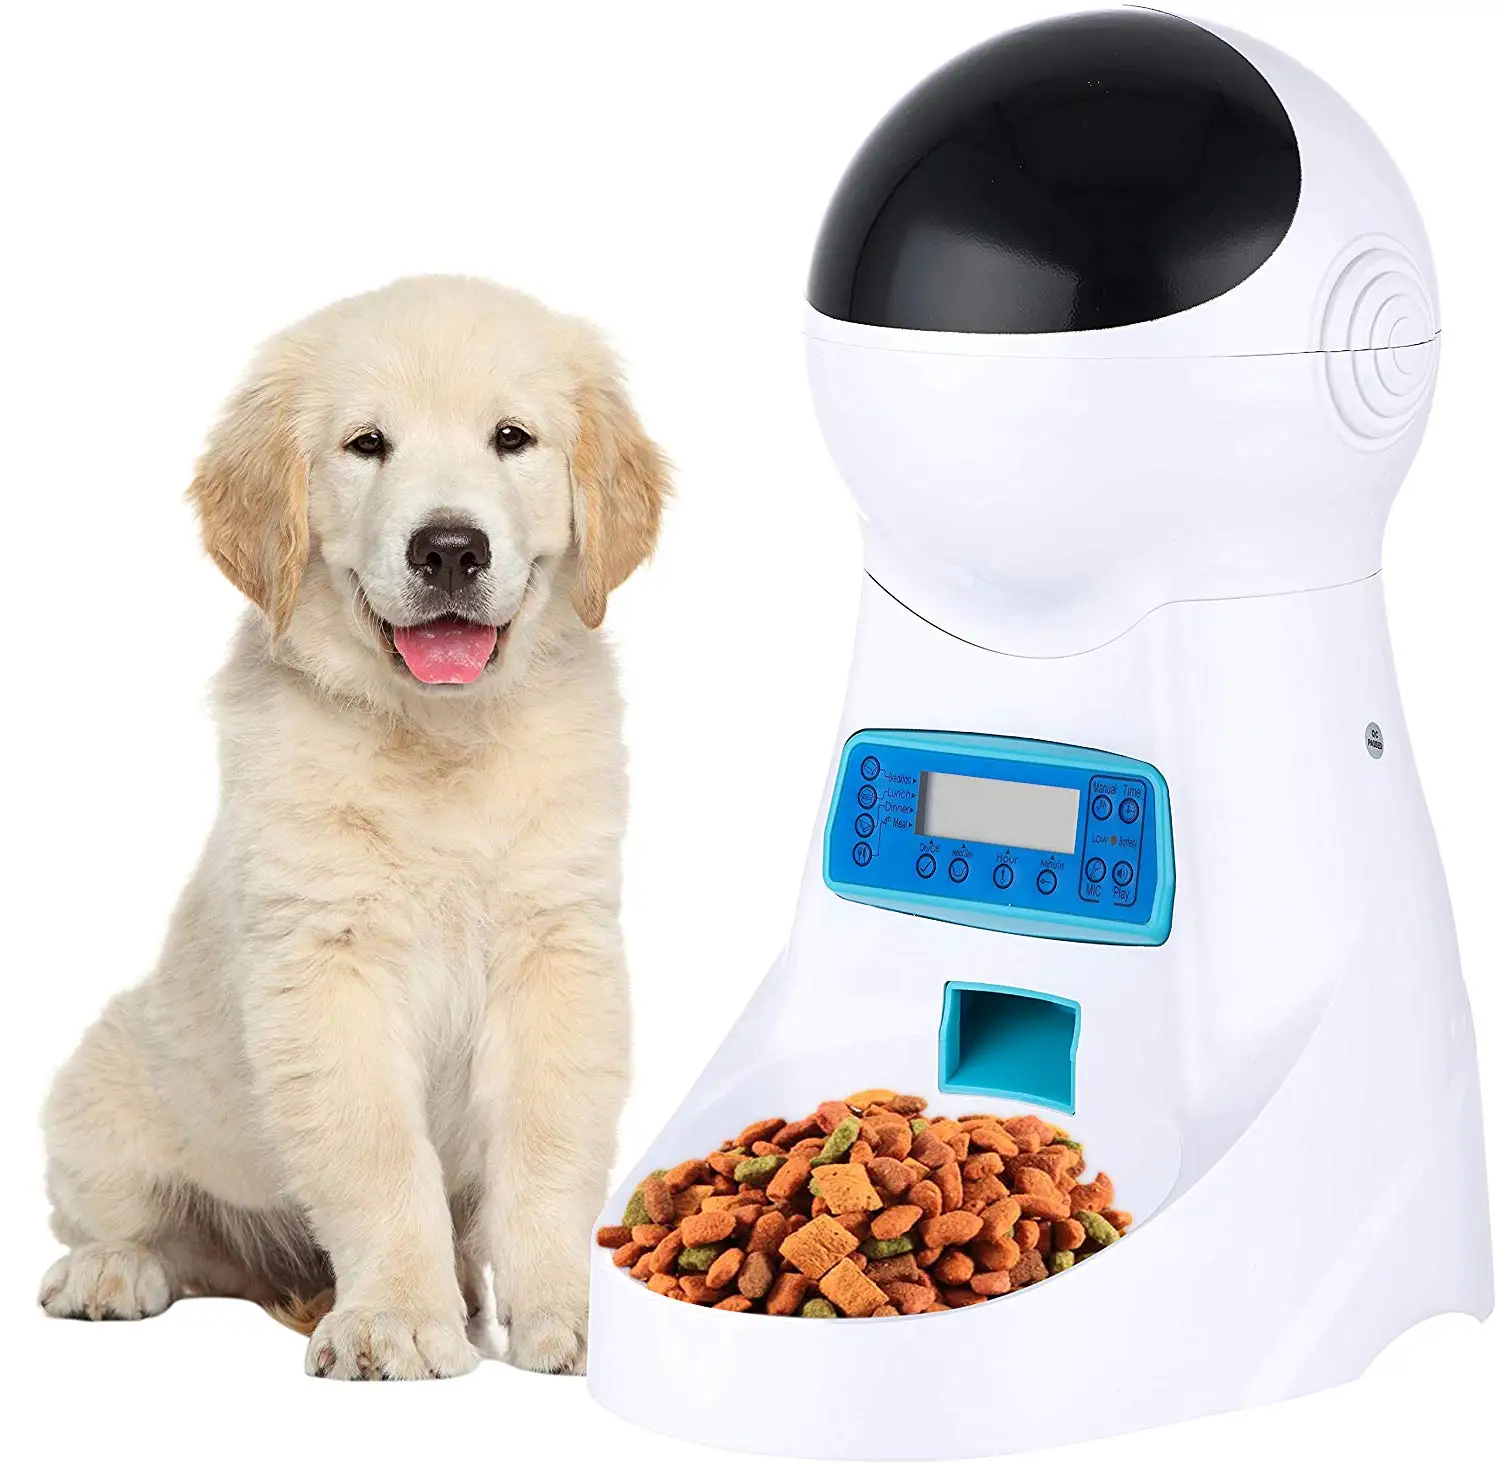 Automatic pet feeder. Кормушка Automatic Pet Feeder. Automatic Pet Feeder автокормушка. Automatic Dog Feeder. Smart auto Pet Feeder.